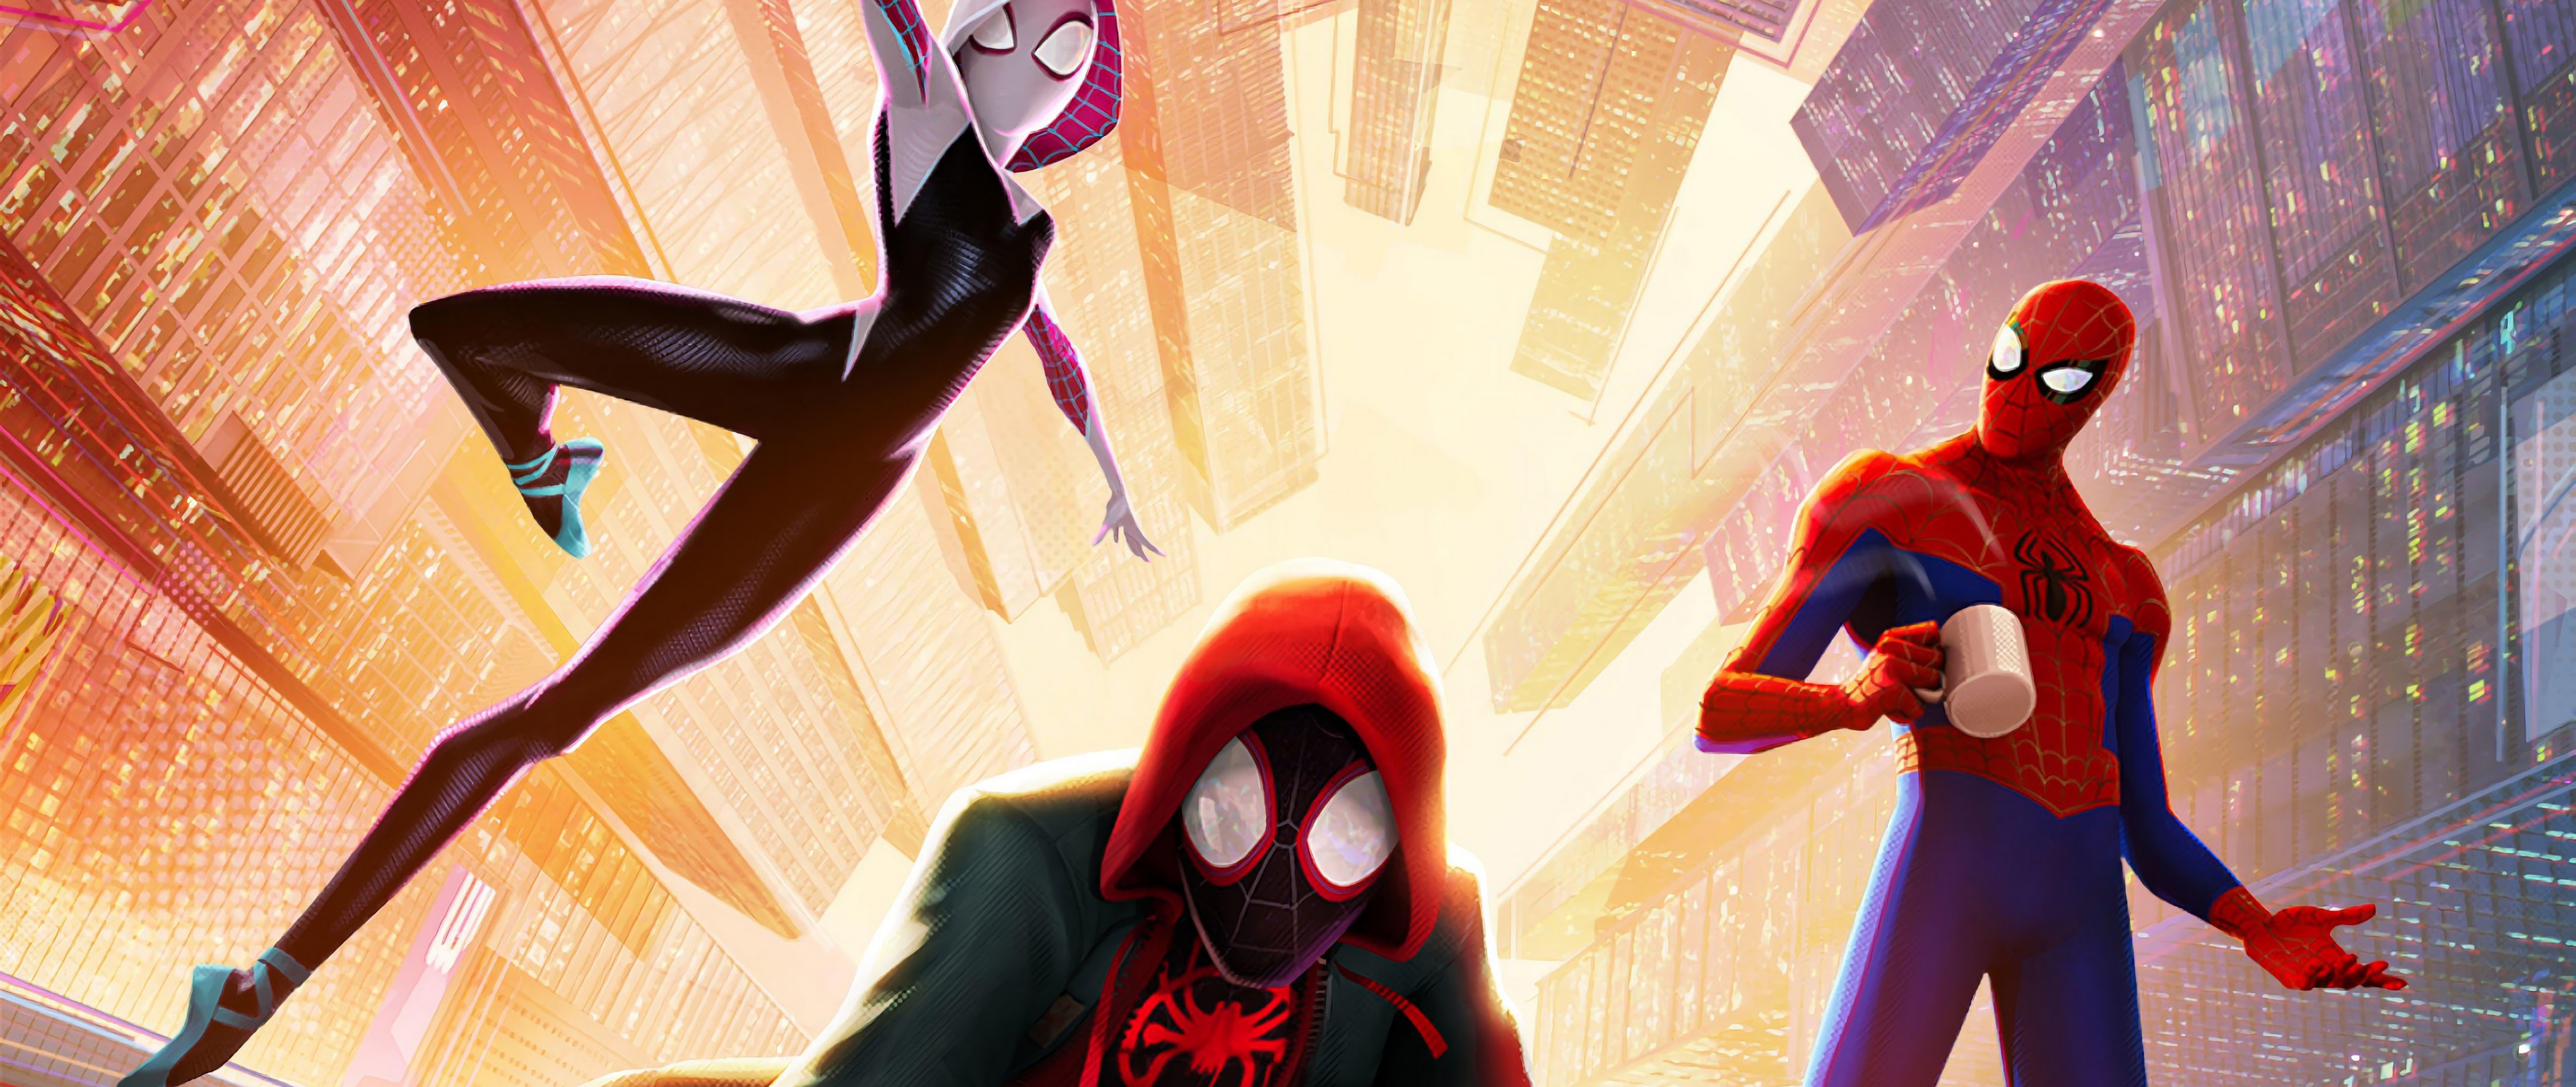 Spider Man: Into The Spider Verse 4K Wallpaper